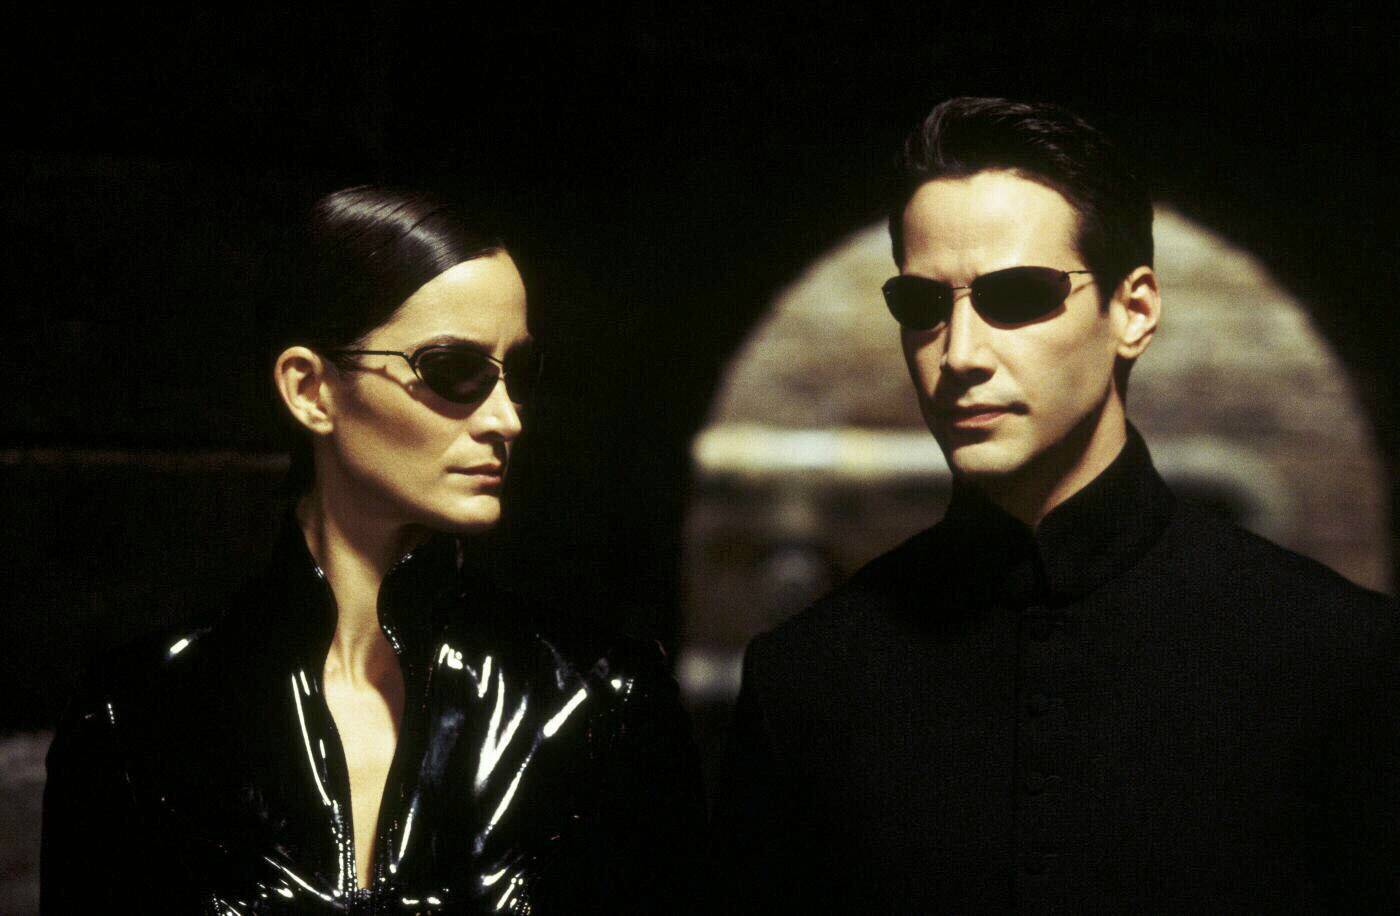 #Darum tragen alle in der Matrix Sonnenbrillen